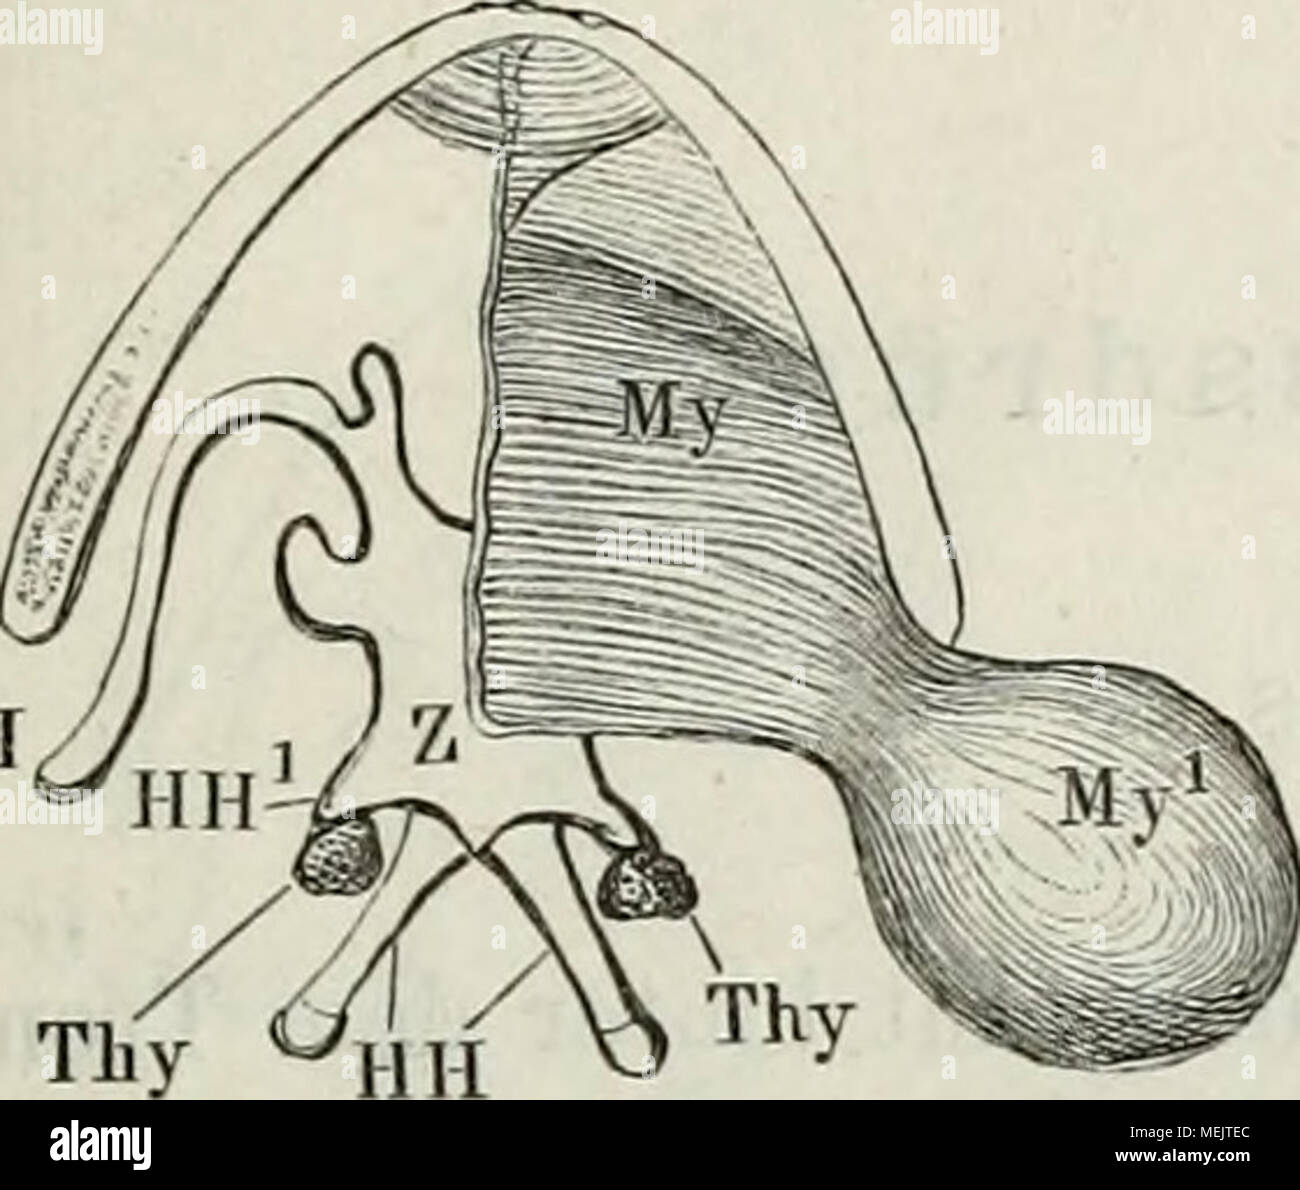 . Die Anatomie des Frosches : ein Handbuch, . sackungen der Mundschleimhaut und kommen nur den männli- chen Thieren zu. Ihre Wand be- steht aus einem bindegewebigen, von reichlichen elastischen Fasern durchzogenen Stroma, innen von einem Plattenepithel, aussen von einer quergestreiften Muskel- schicht überzogen. Letztere ist eine directe Fortsetzung des die ganze Blase Schleuder- oder beutelartig umhüllenden Mn s - culus i)iylo-hyoideus (Fig. 1.5, My, My^). Wenn das Thier schreit, so wer- den die Schallblasen aufgebläht und fungiren als Resonatoren; dabei treten sie bei Rana esculenta jedersei Stock Photo